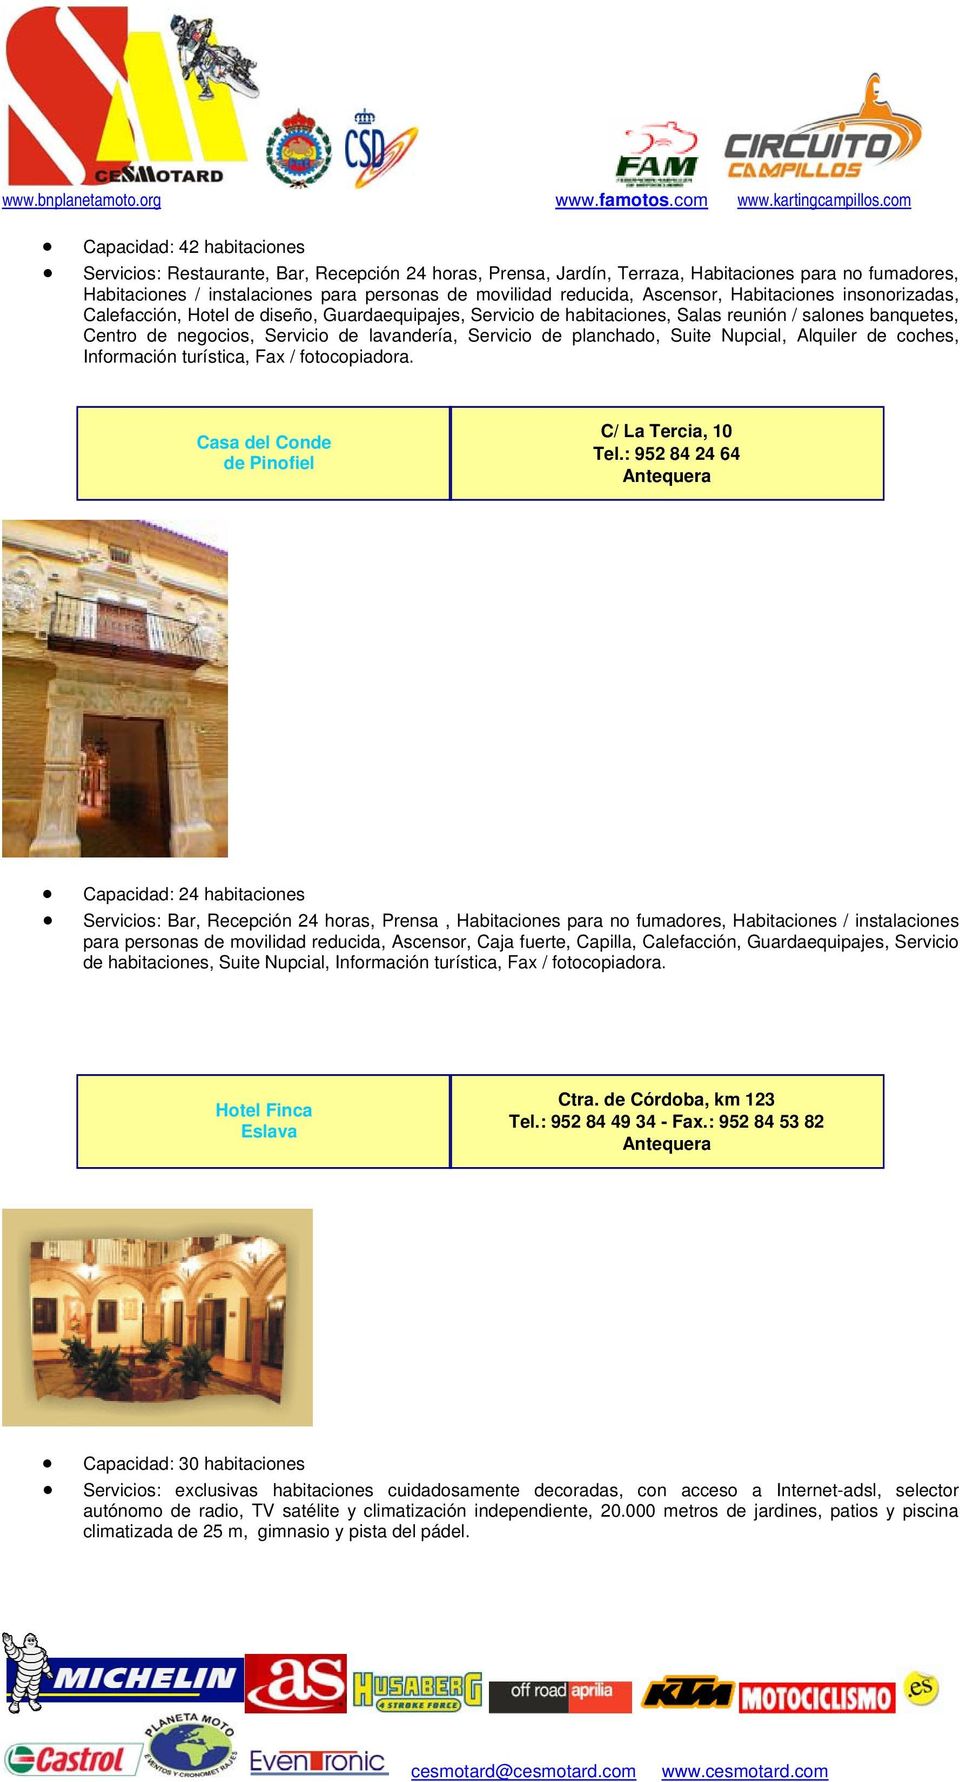 de planchado, Suite Nupcial, Alquiler de coches, Información turística, Fax / fotocopiadora. Casa del Conde de Pinofiel C/ La Tercia, 10 Tel.